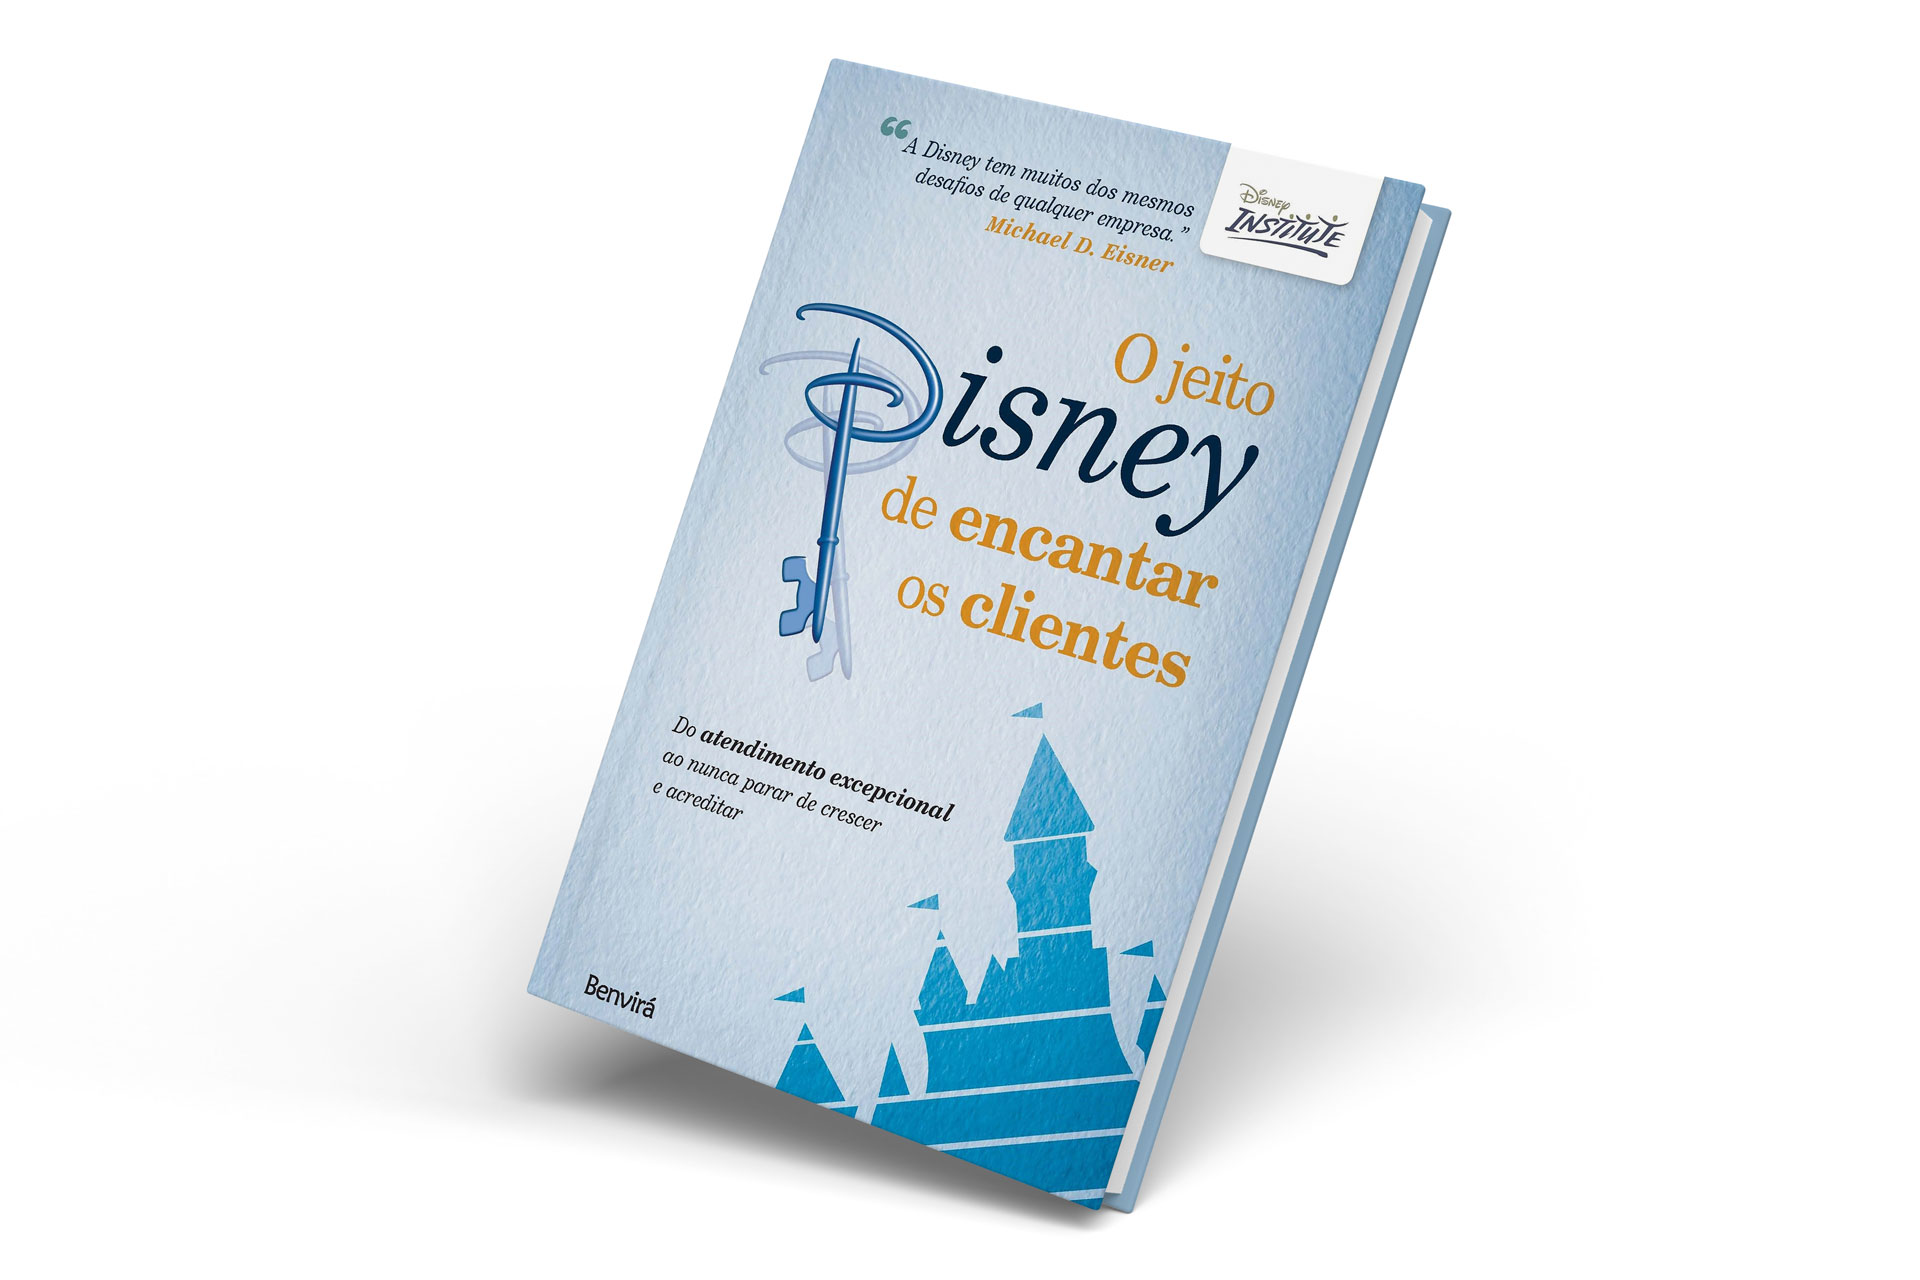 Capa do livro O jeito Disney de encantar os clientes